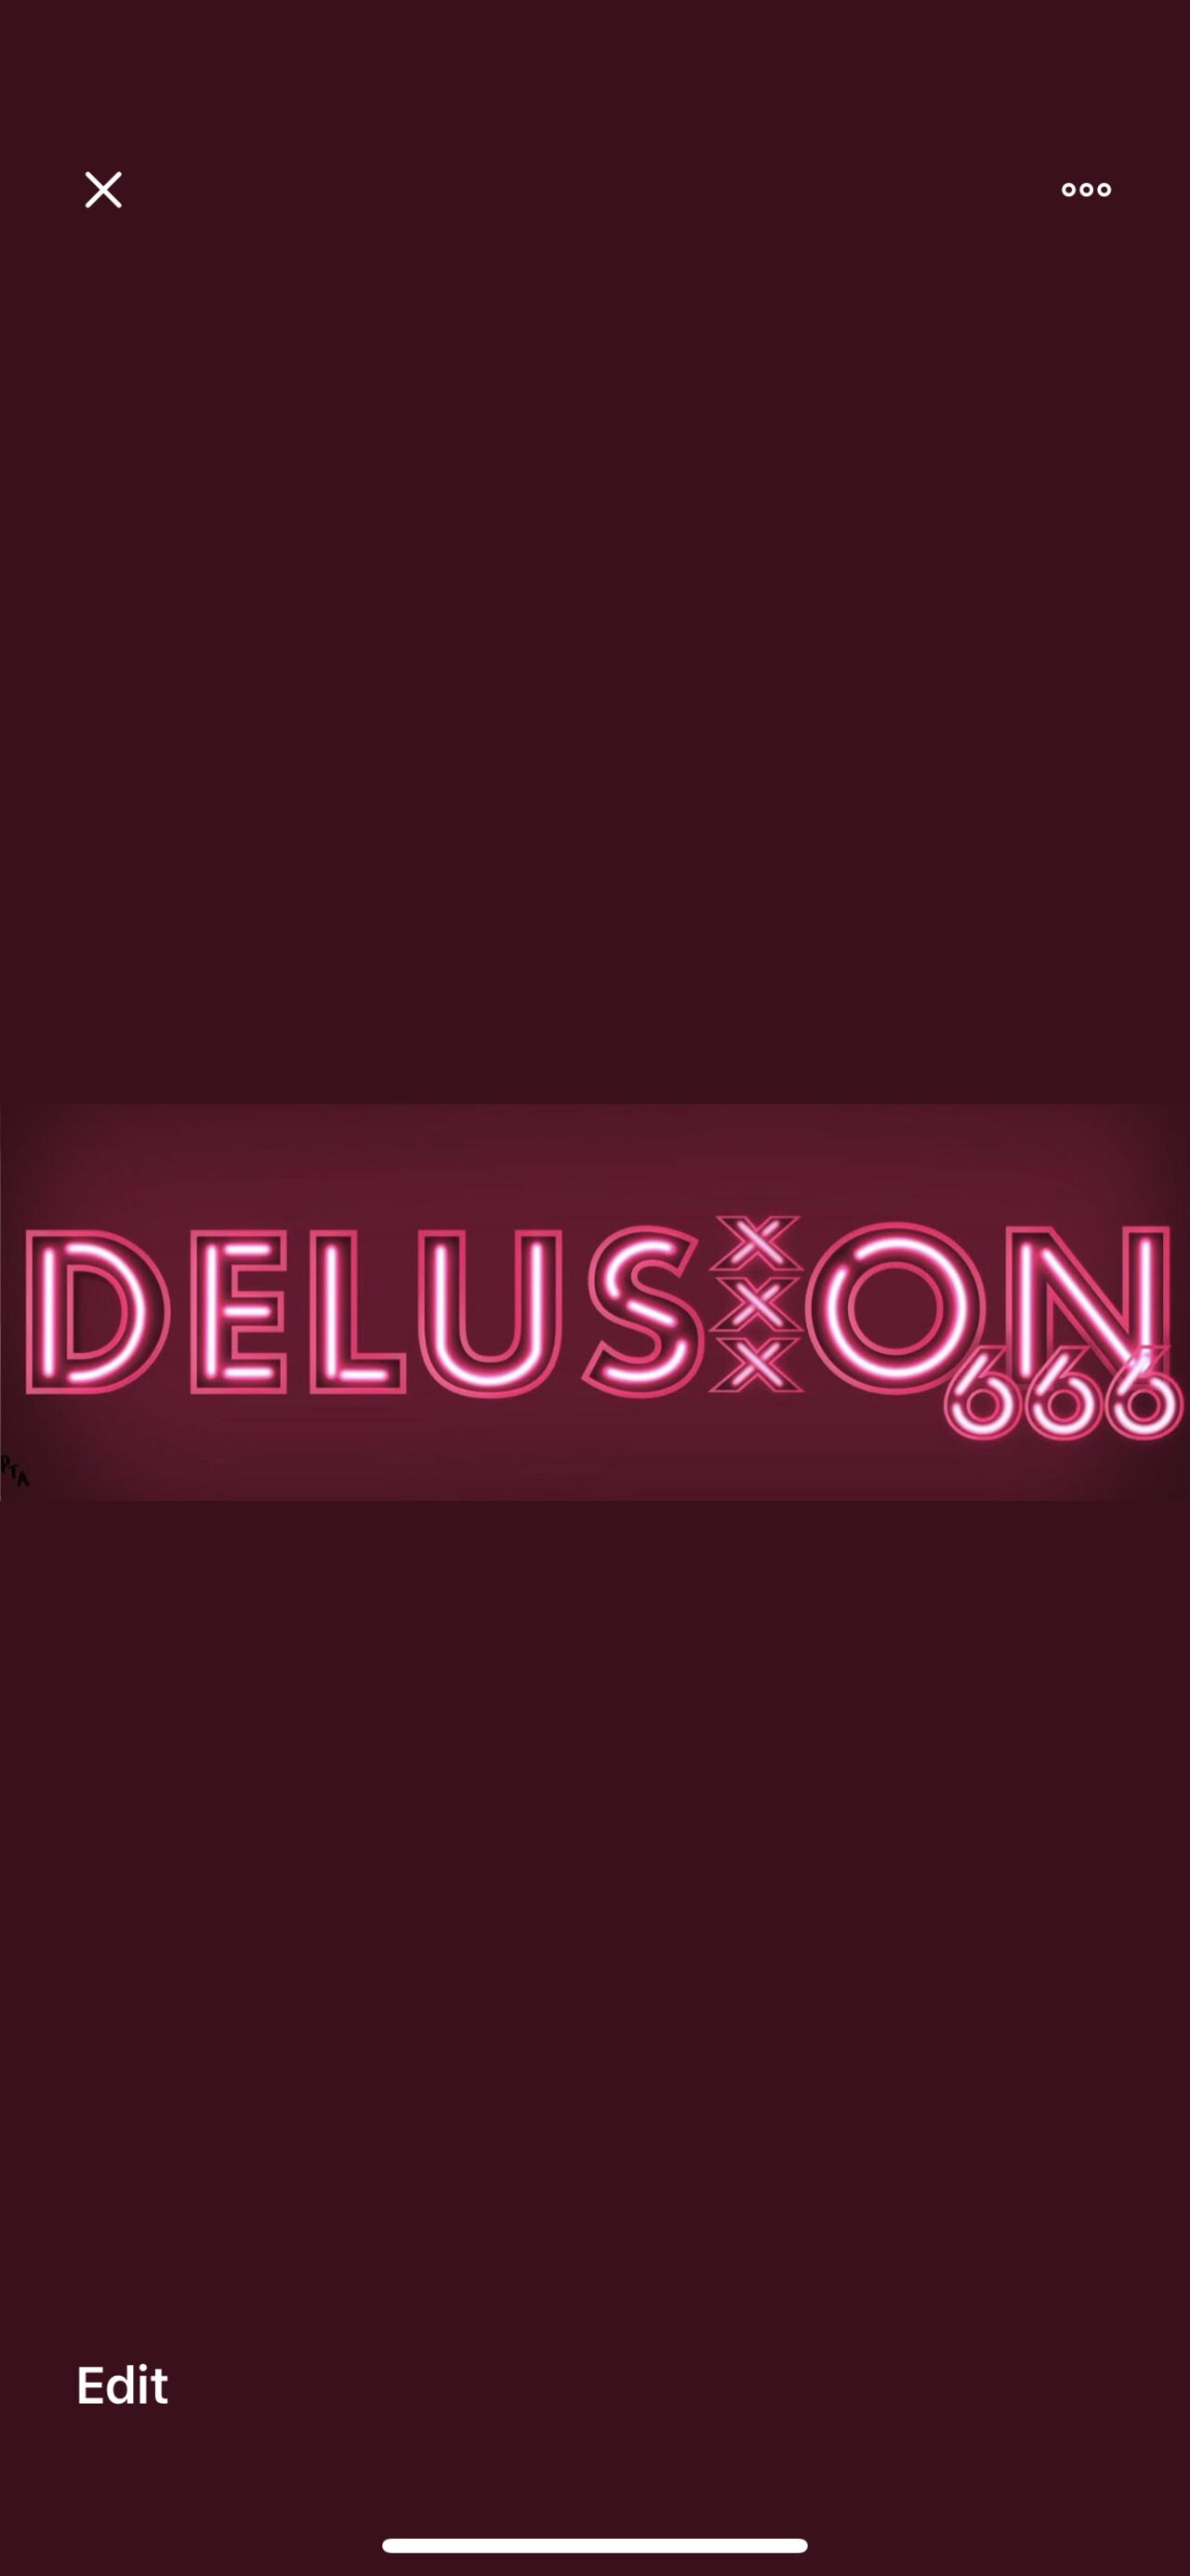 See Delusion profile